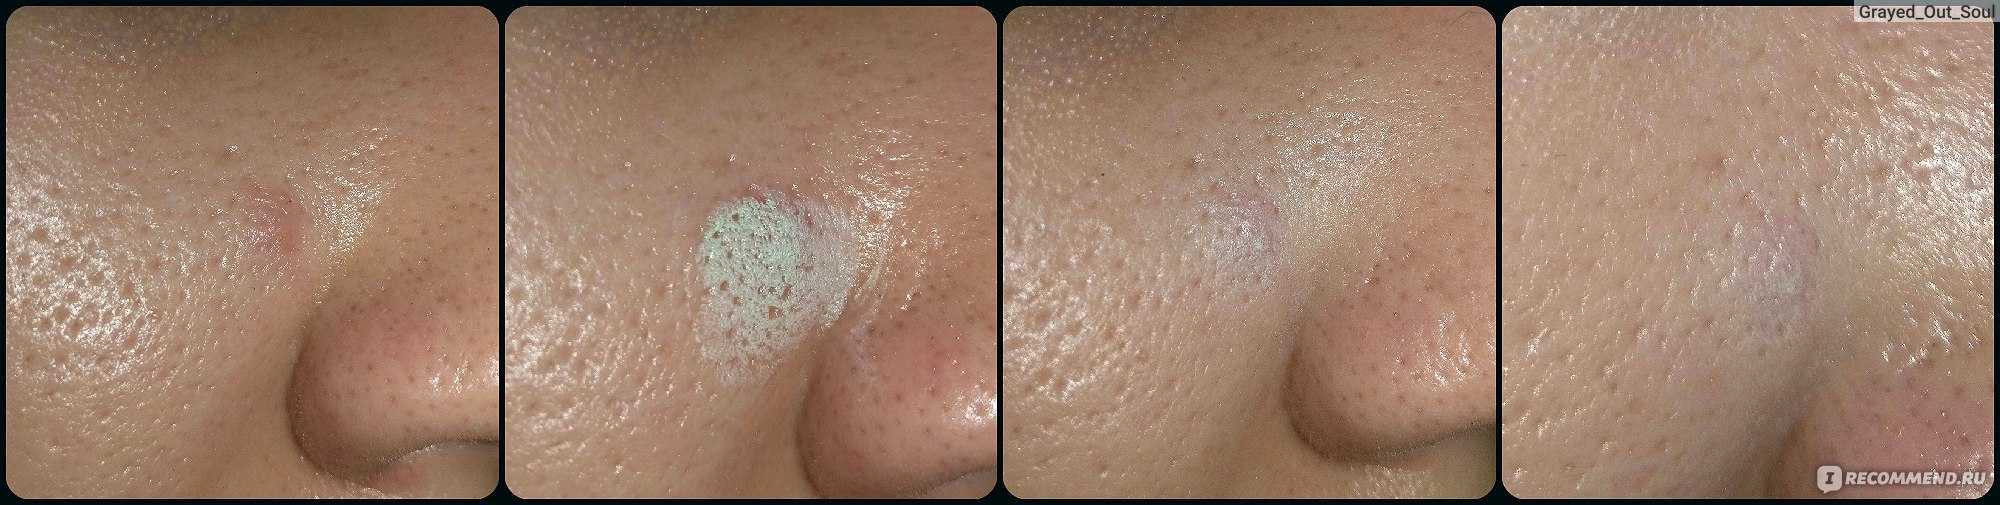 Шелушится кожа на лице: причины и как убрать шелушение с поомщью кремов, витаминов и скрабов